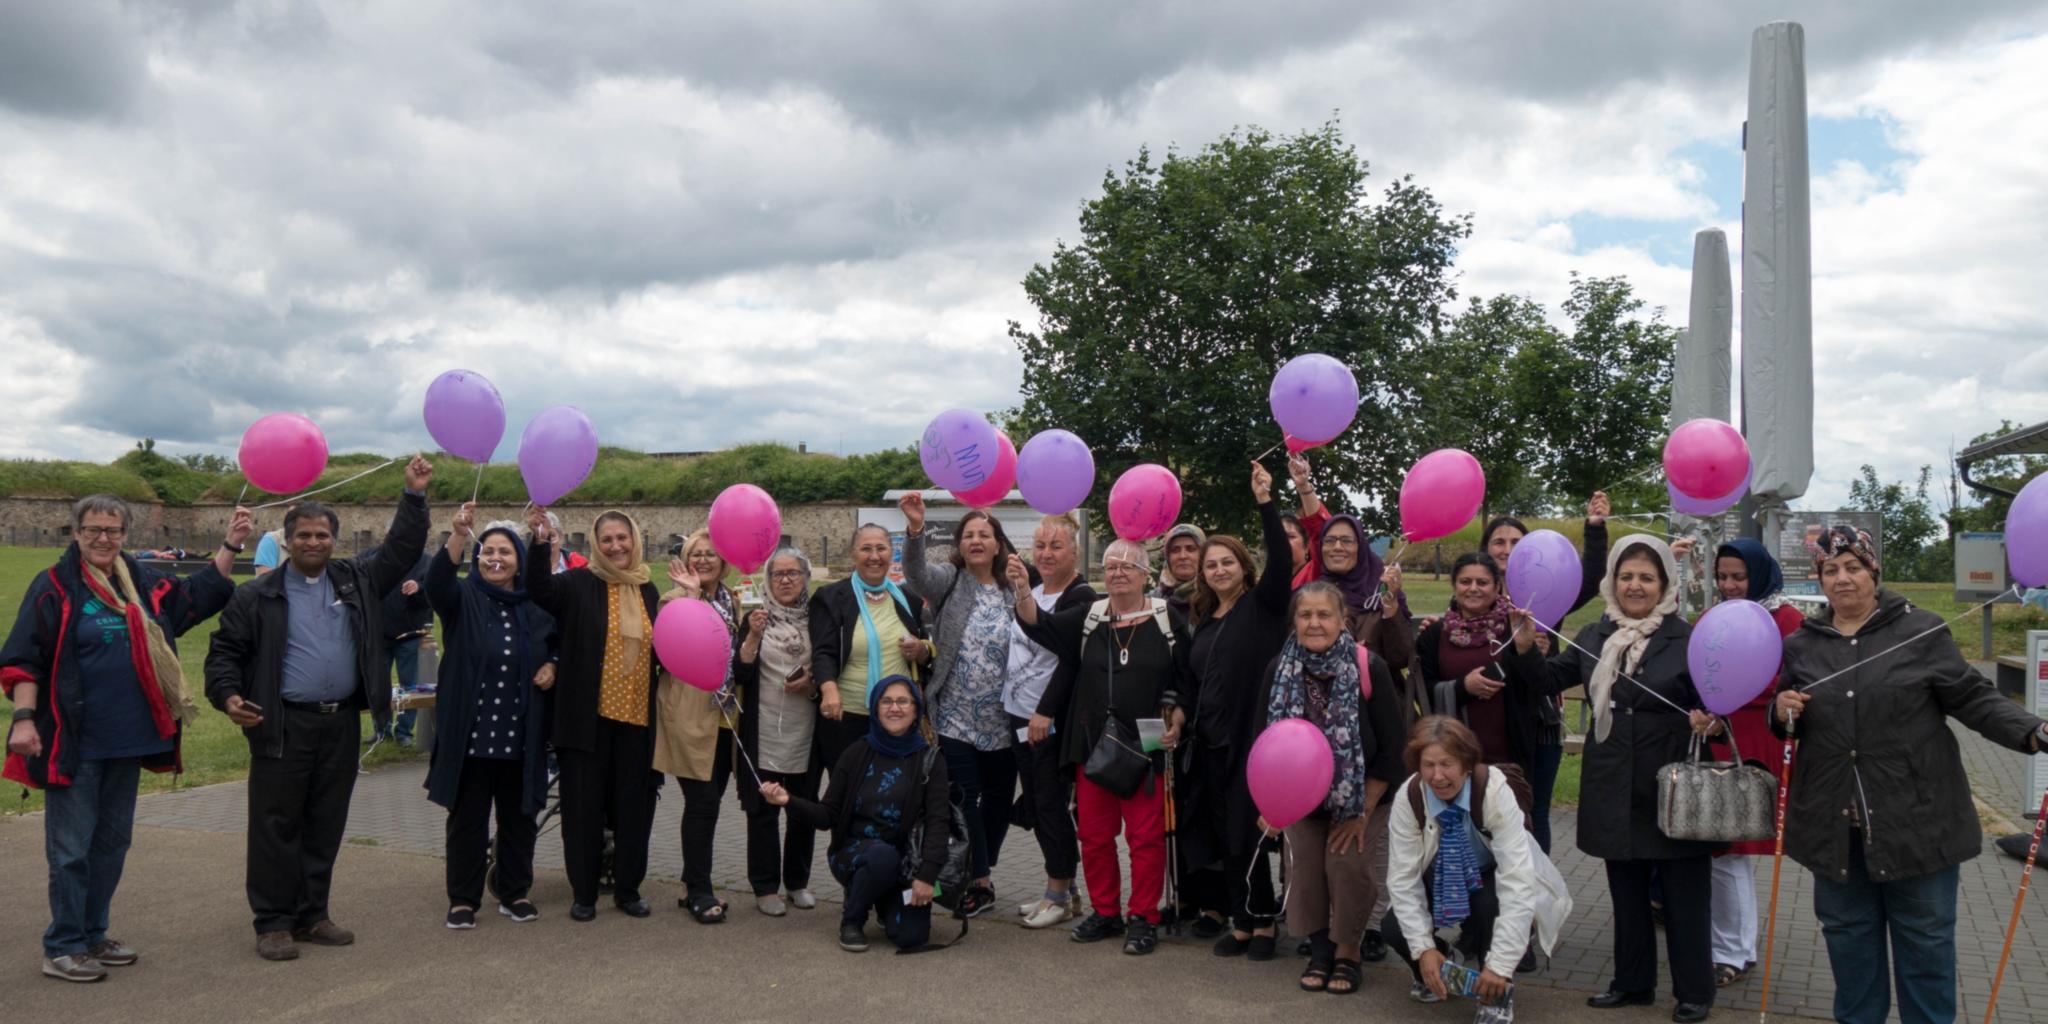 Die Damen vom internationalen Frauenfrühstück aus Dietzenbach mit den beschriebenen Luftballons